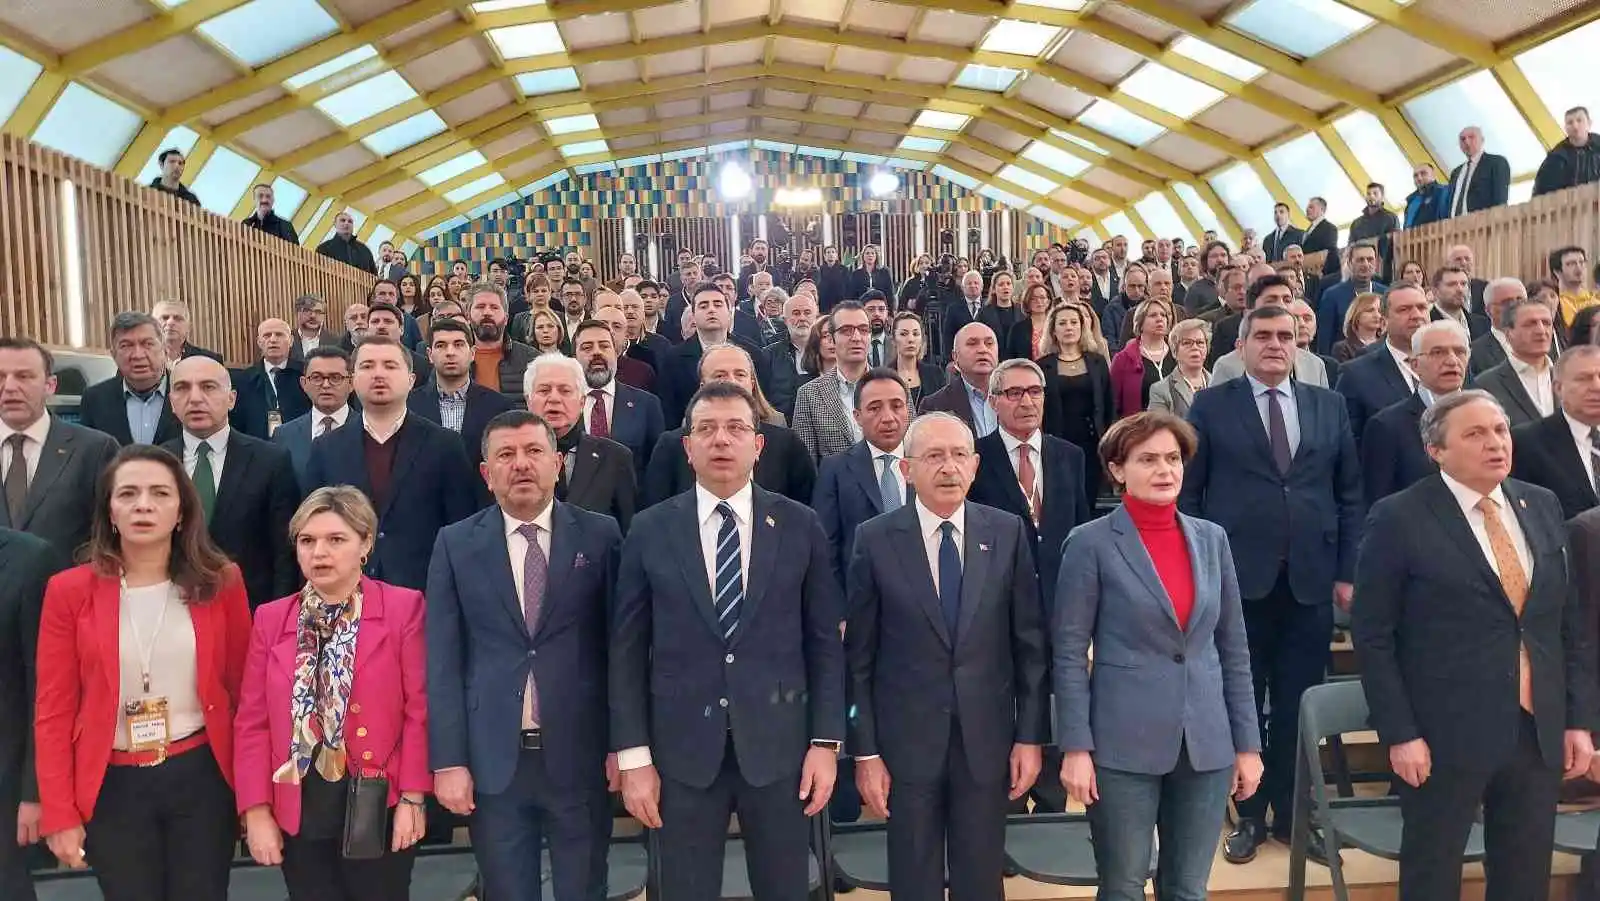 CHP Genel Başkanı Kılıçdaroğlu: "Ülkemizi güzel bir geleceğe hazırlamamız lazım"
